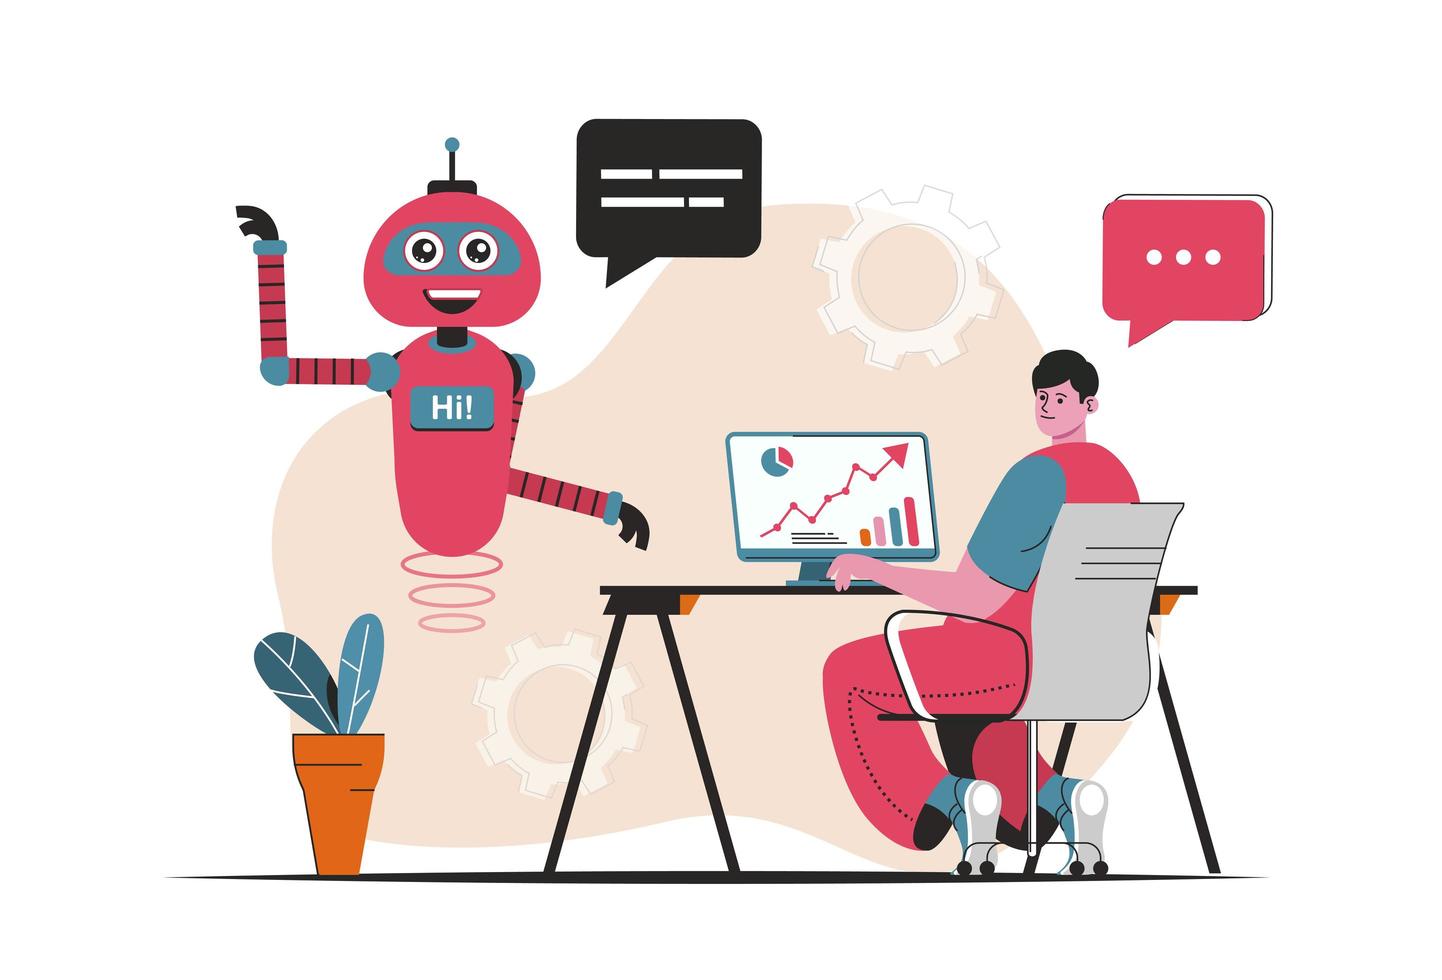 Konzept des virtuellen Assistenten isoliert. Kundensupport durch Bots-Roboter bei Online-Chats. Menschenszene im flachen Cartoon-Design. Vektorgrafik für Blogging, Website, mobile App, Werbematerialien. vektor